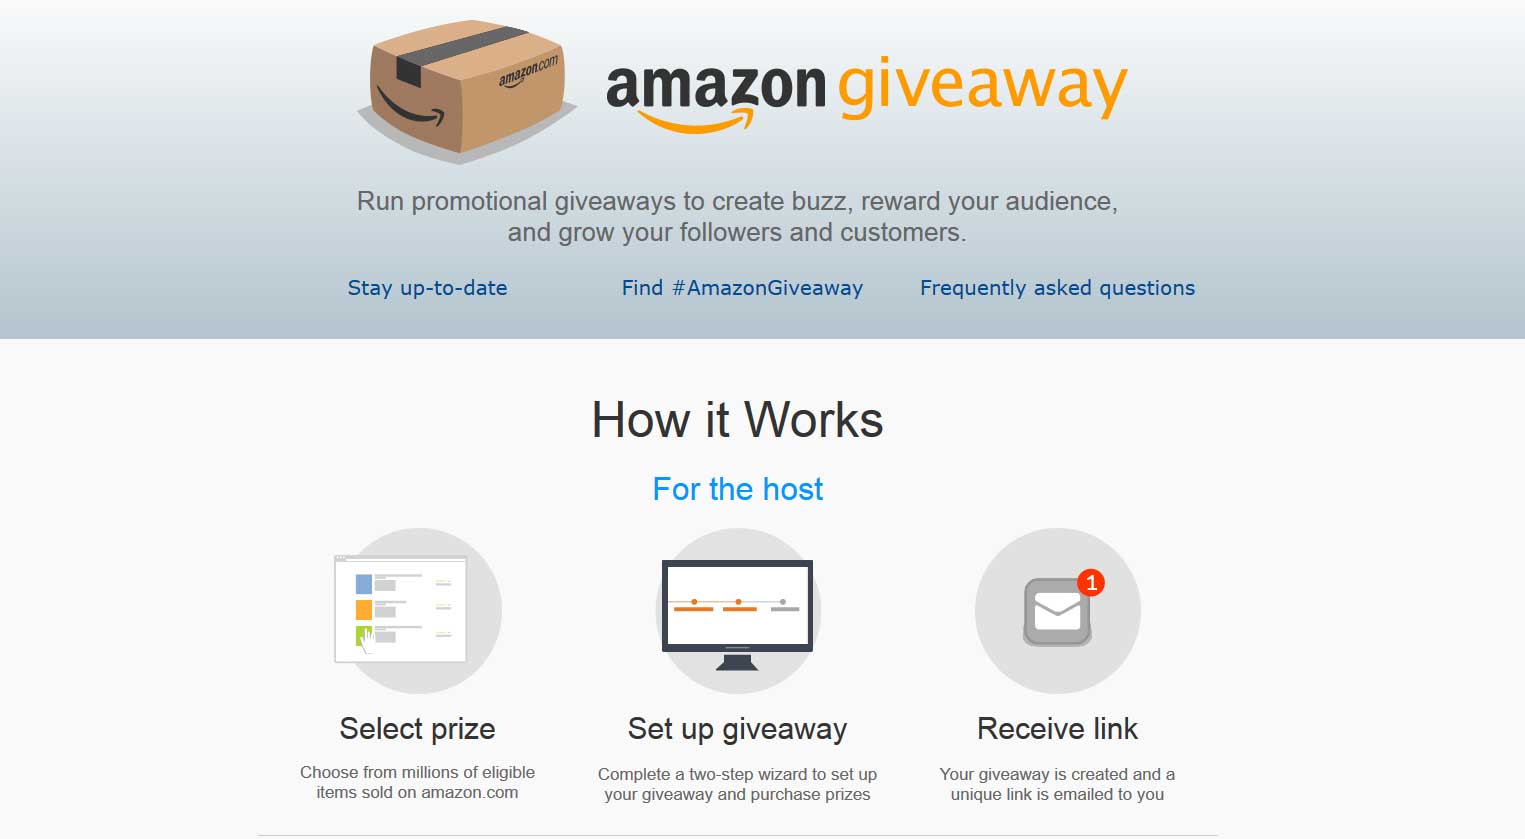 Amazon Giveaway zum Verantstalten von Gewinnspielen - Bildquelle: amazon.com/giveaway